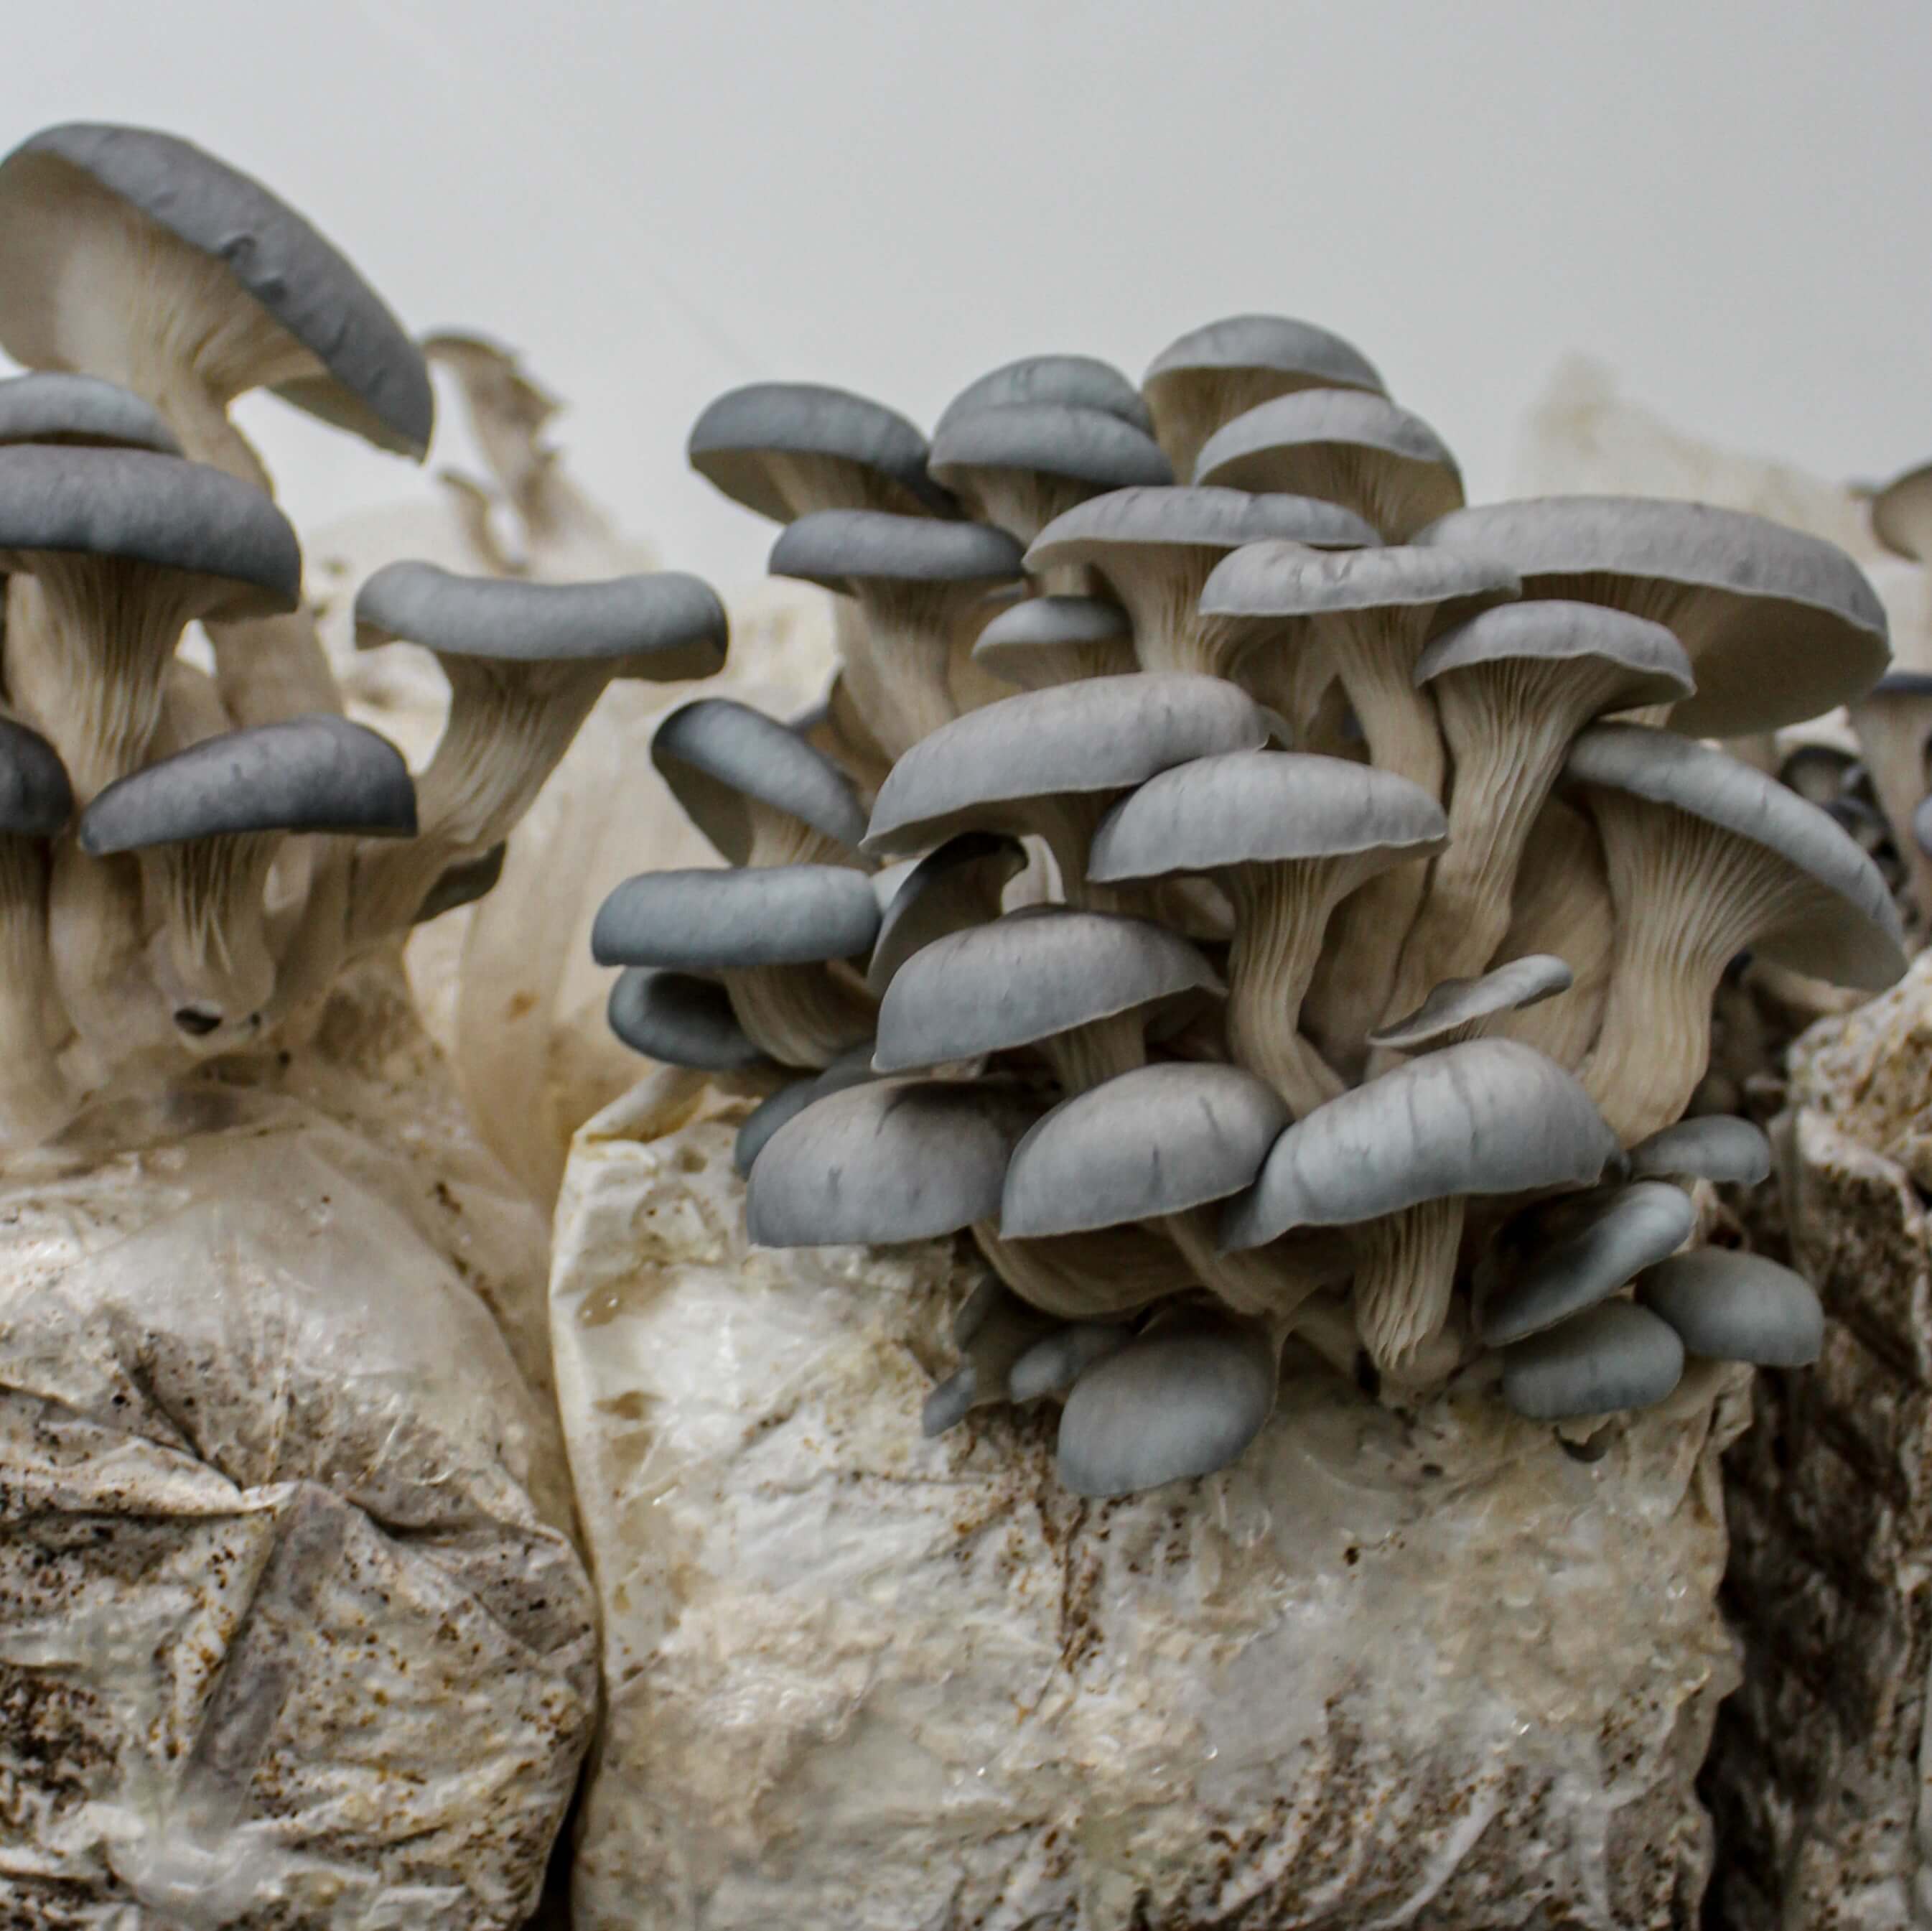 Blue Oyster « Mushroom Growing Kit – Les 400 Pieds de Champignon